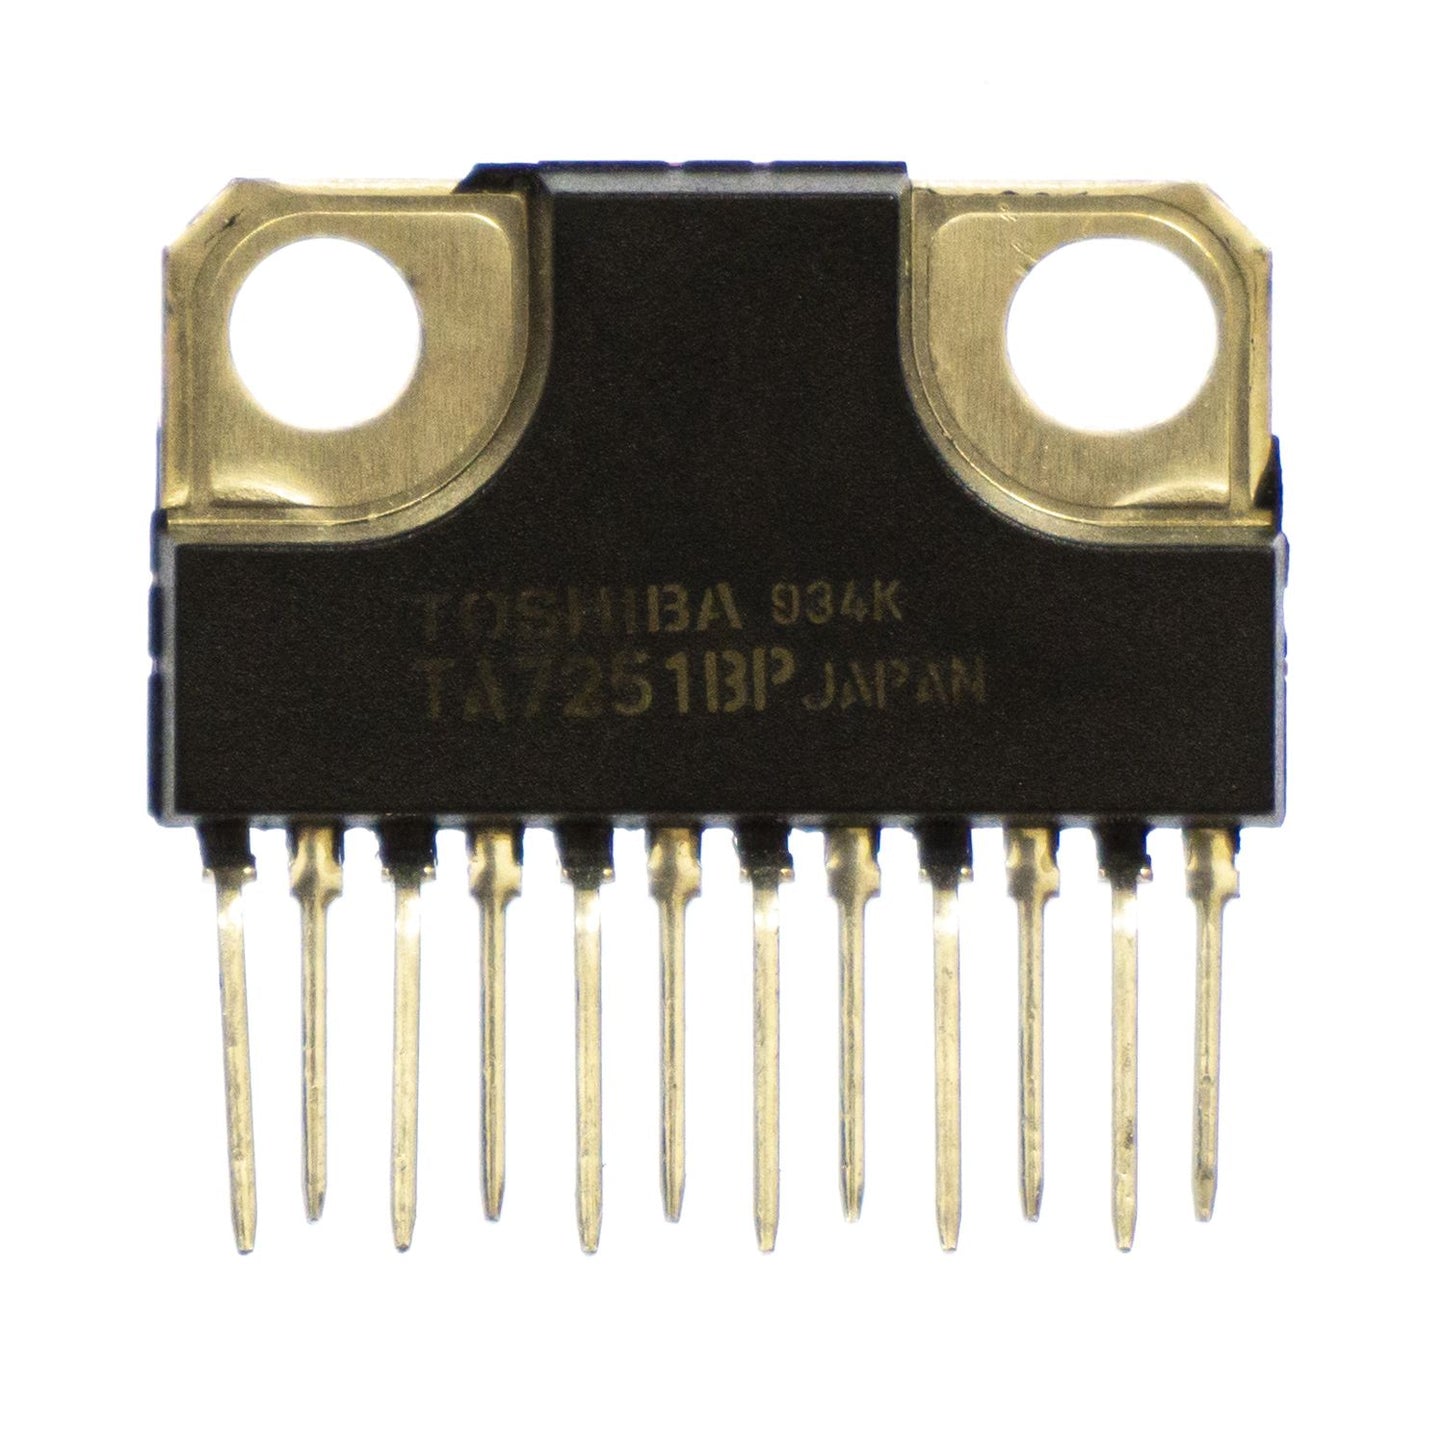 Toshiba TA7251 circuito integrato, transistor, componente elettronico, 12 contatti